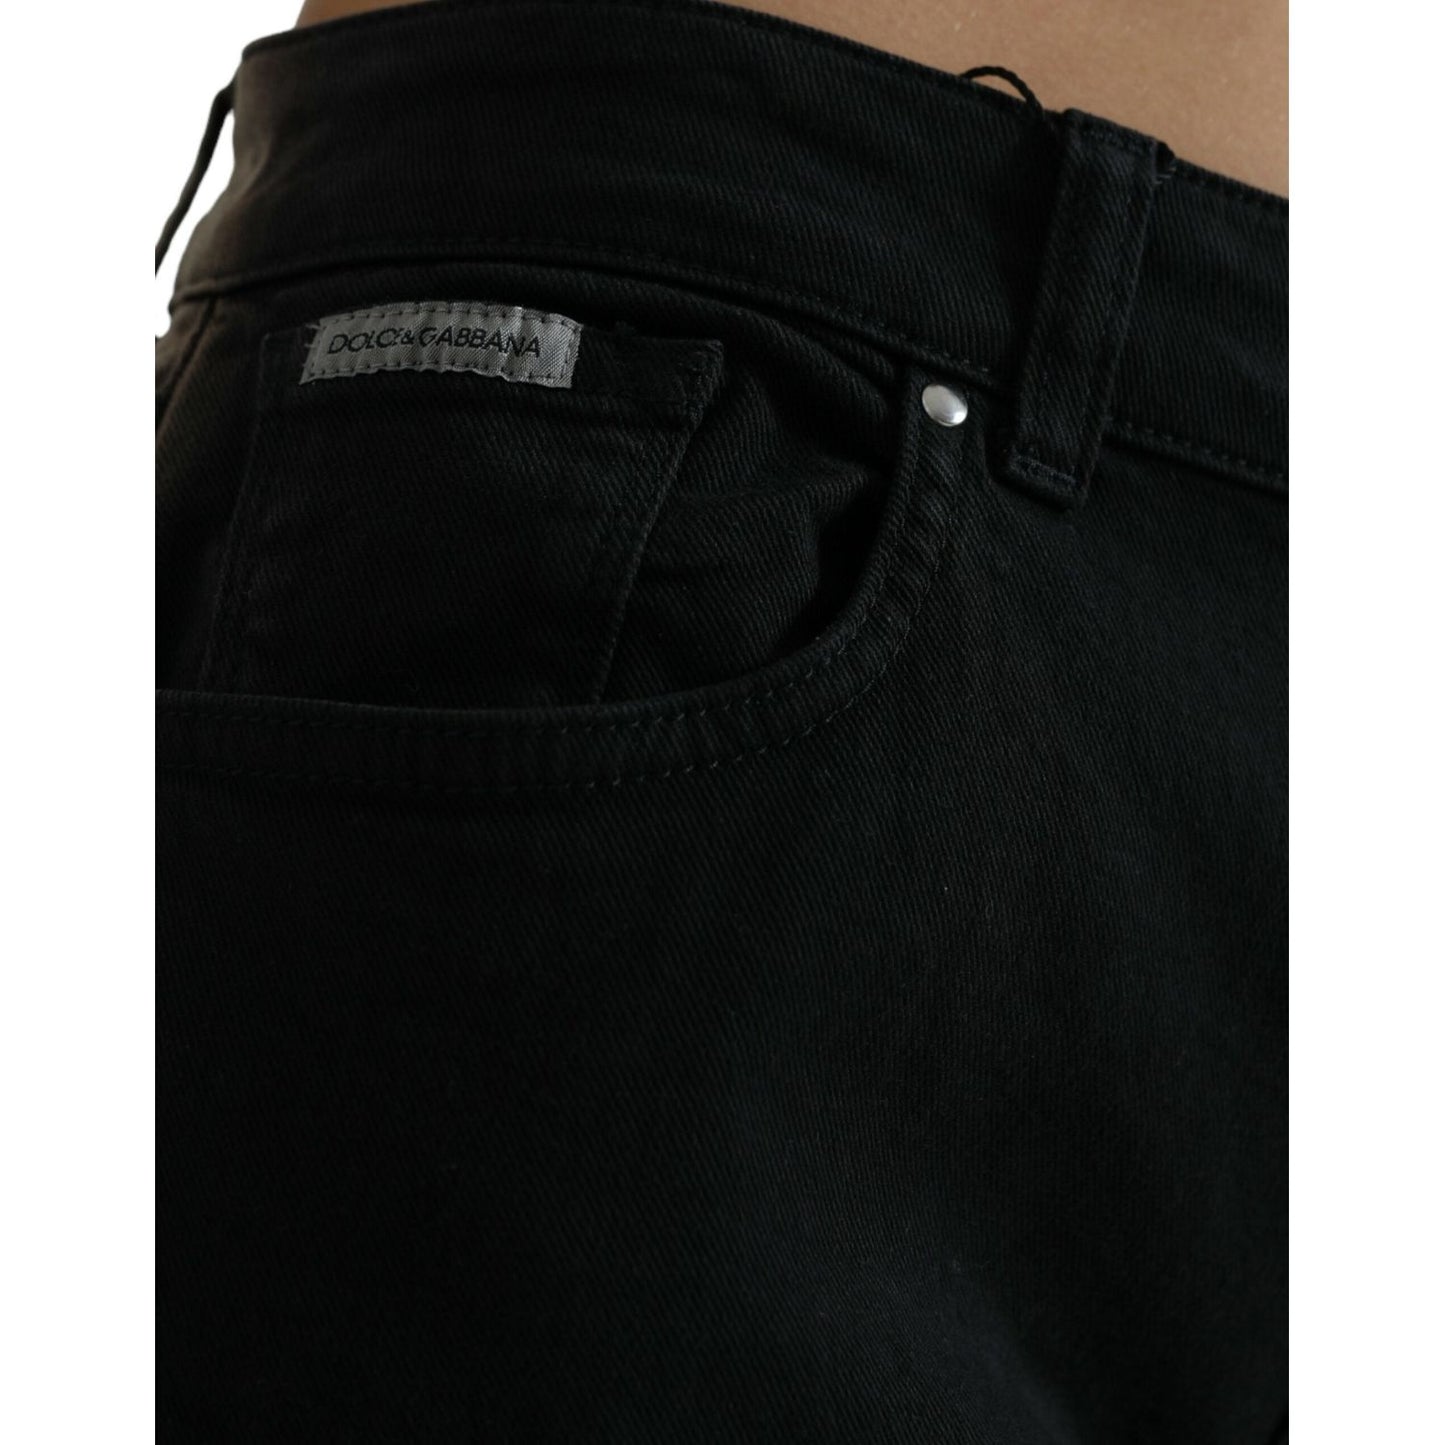 Dolce & Gabbana Elegant Mid-Waist Stretch Jeans black-gray-two-tone-denim-logo-skinny-jeans